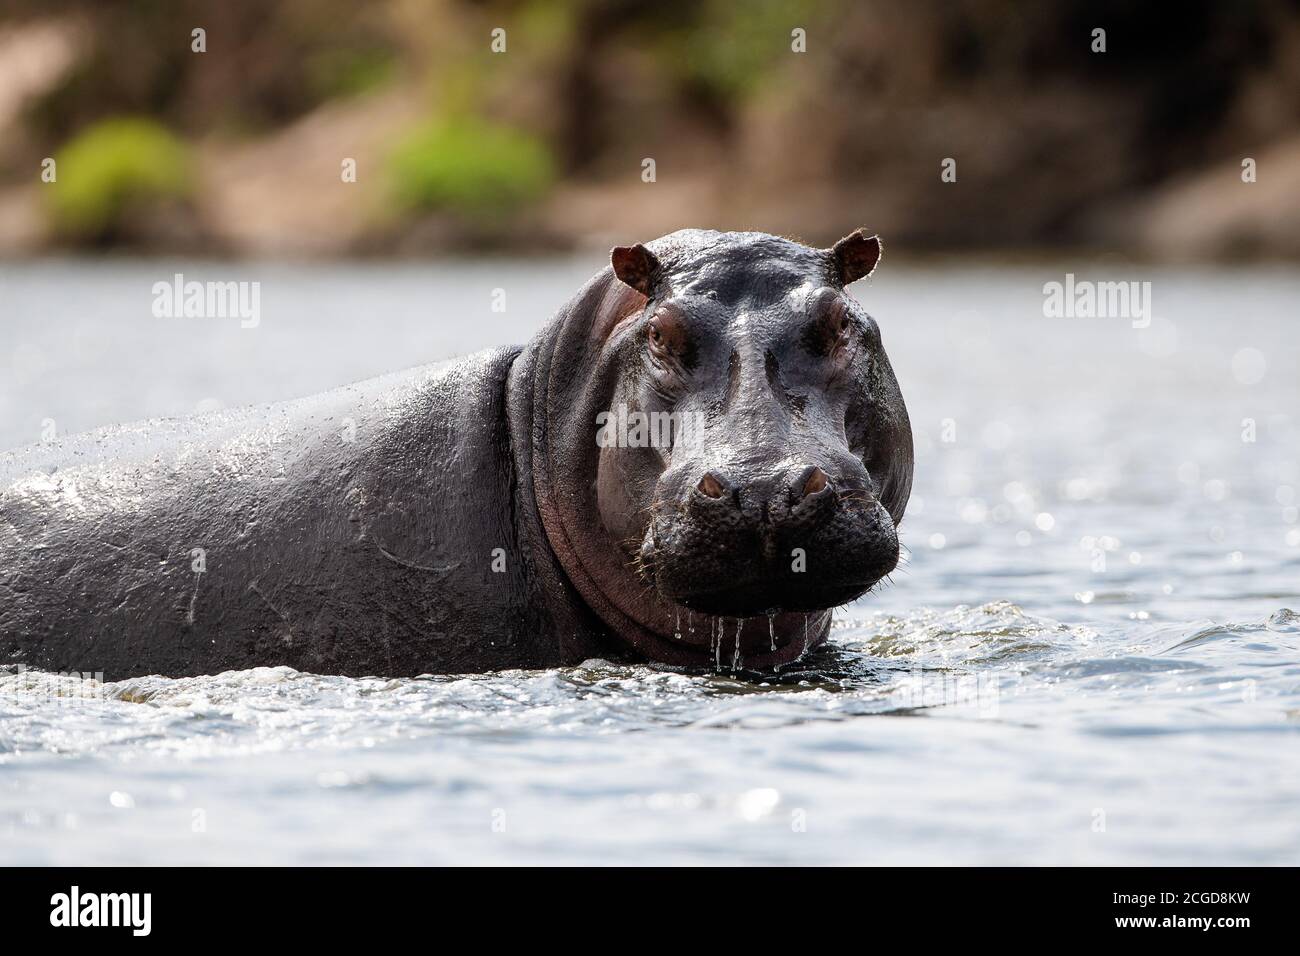 Hippopotamus commun africain (Hippopotamus amphibius) dans la rivière Talek, réserve de Masai Mara, Kenya, afrique de l'est Banque D'Images